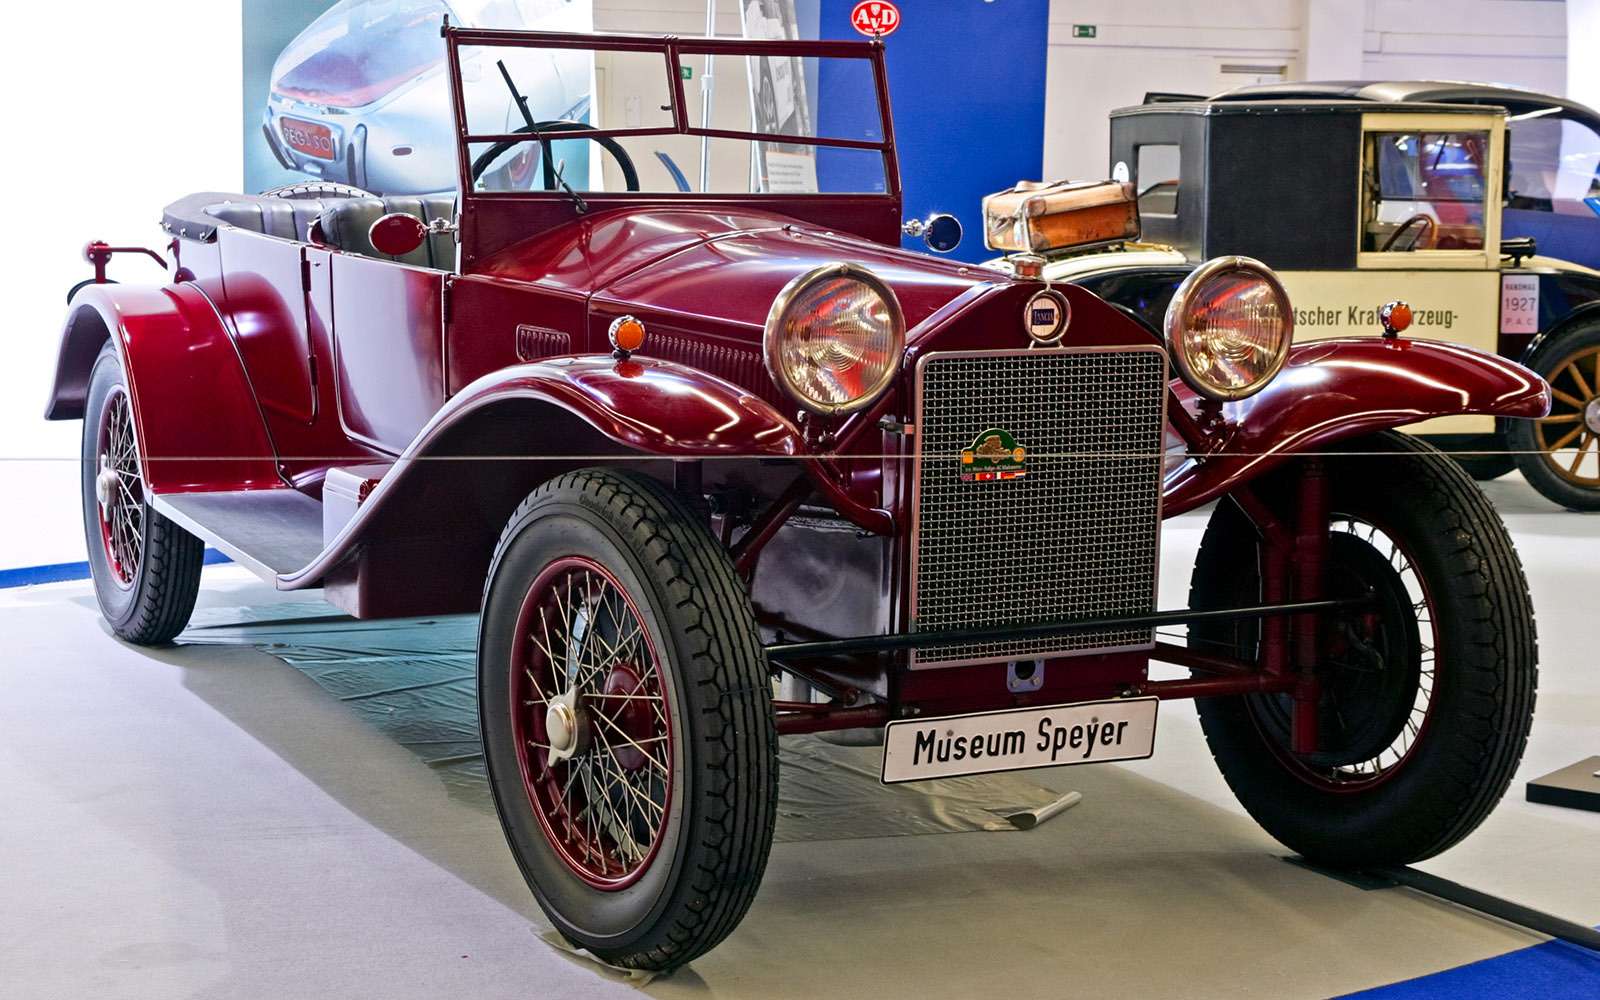 Итальянская Lancia Lambda, дебютировавшая в 1921 году, эффектным дизайном не отличалась, зато некоторыми техническими решениями произвела фурор.